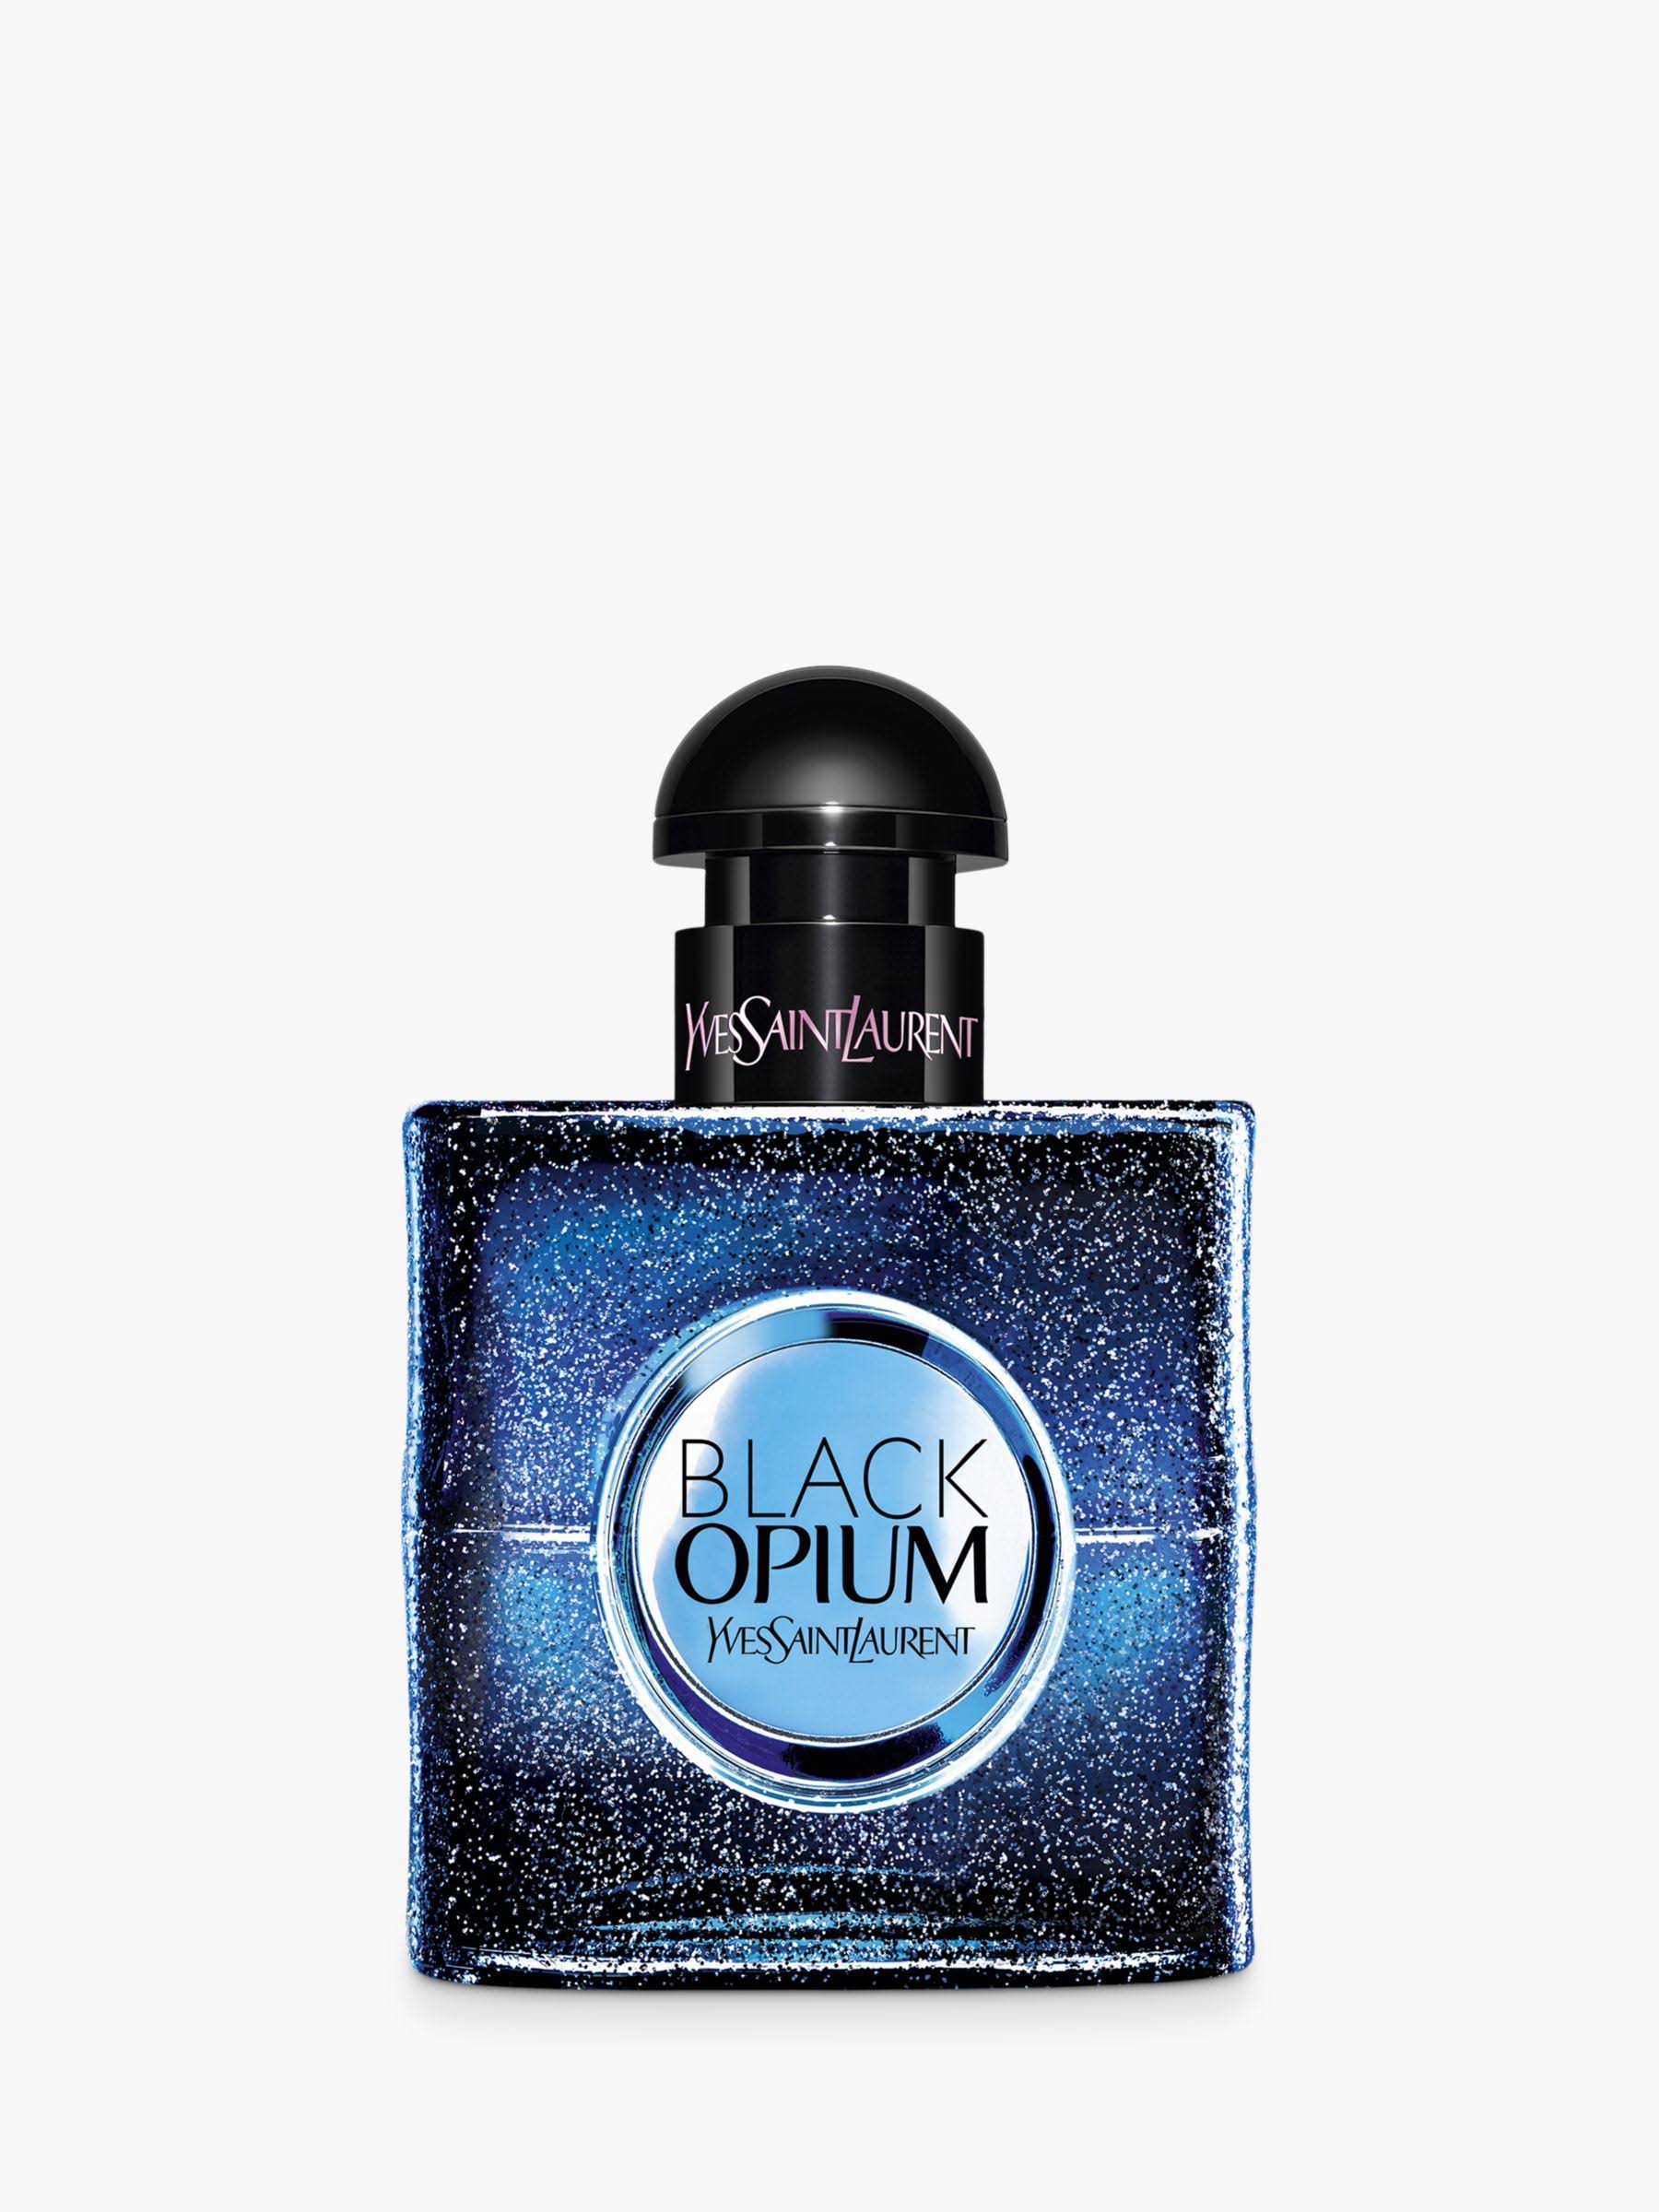 Yves Saint Laurent Black Opium Eau De Parfum Spray - 90ml